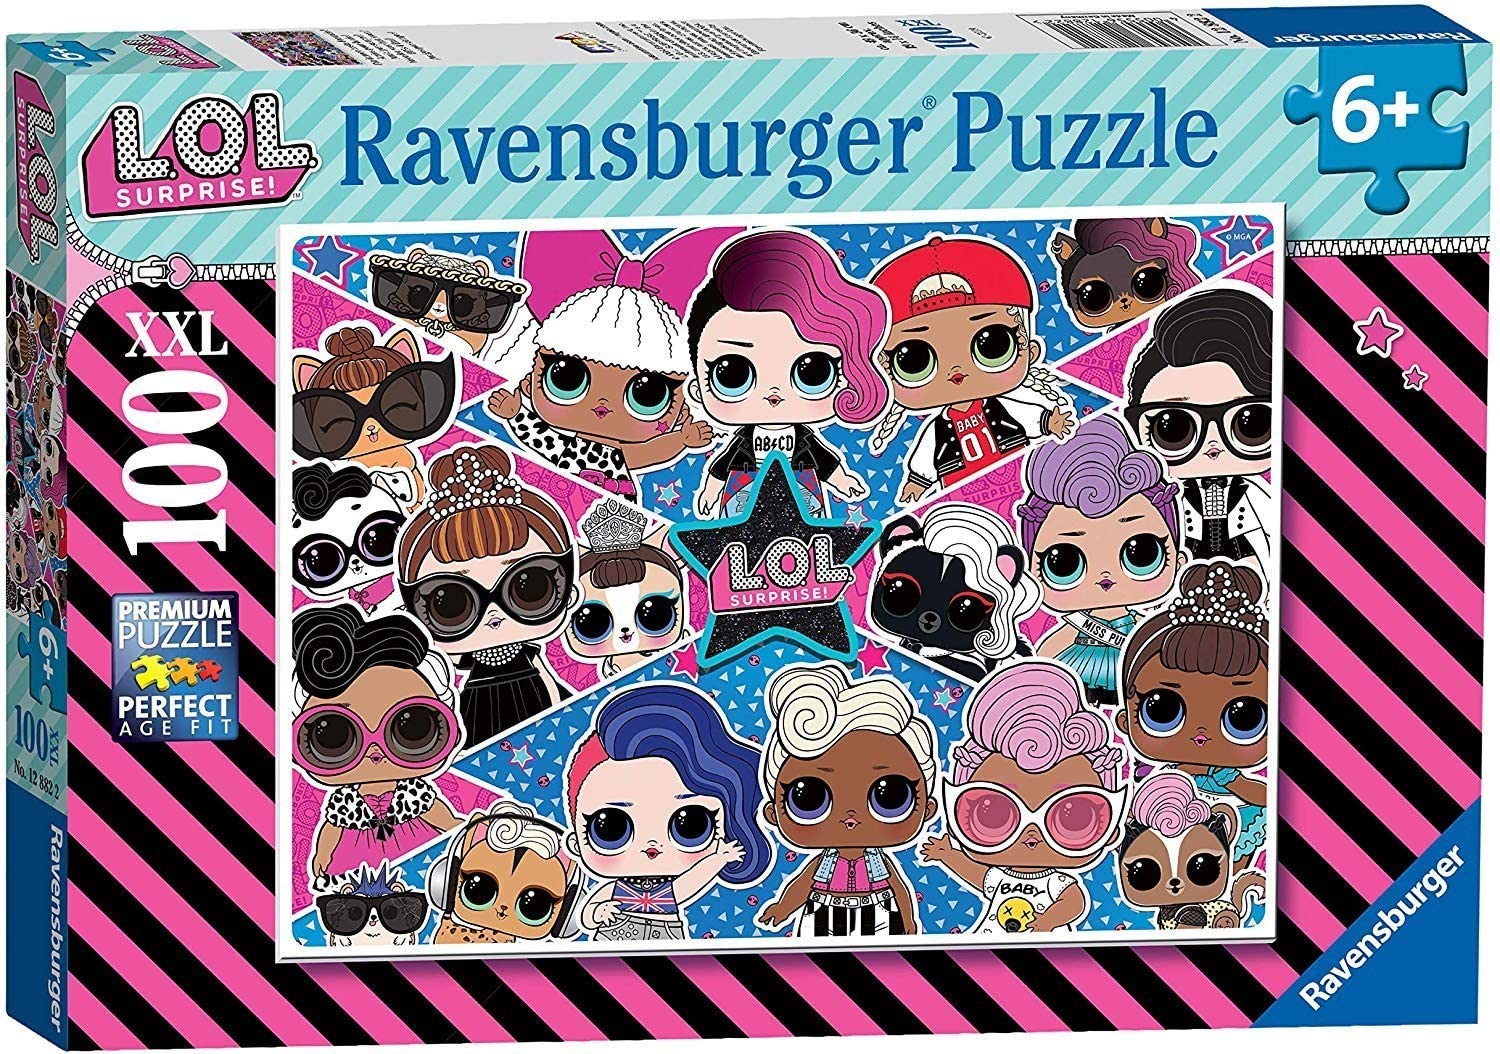 Ravensburger 12882 Lol Surprise Jigsaw Puzzle Xxl 100 Pieces